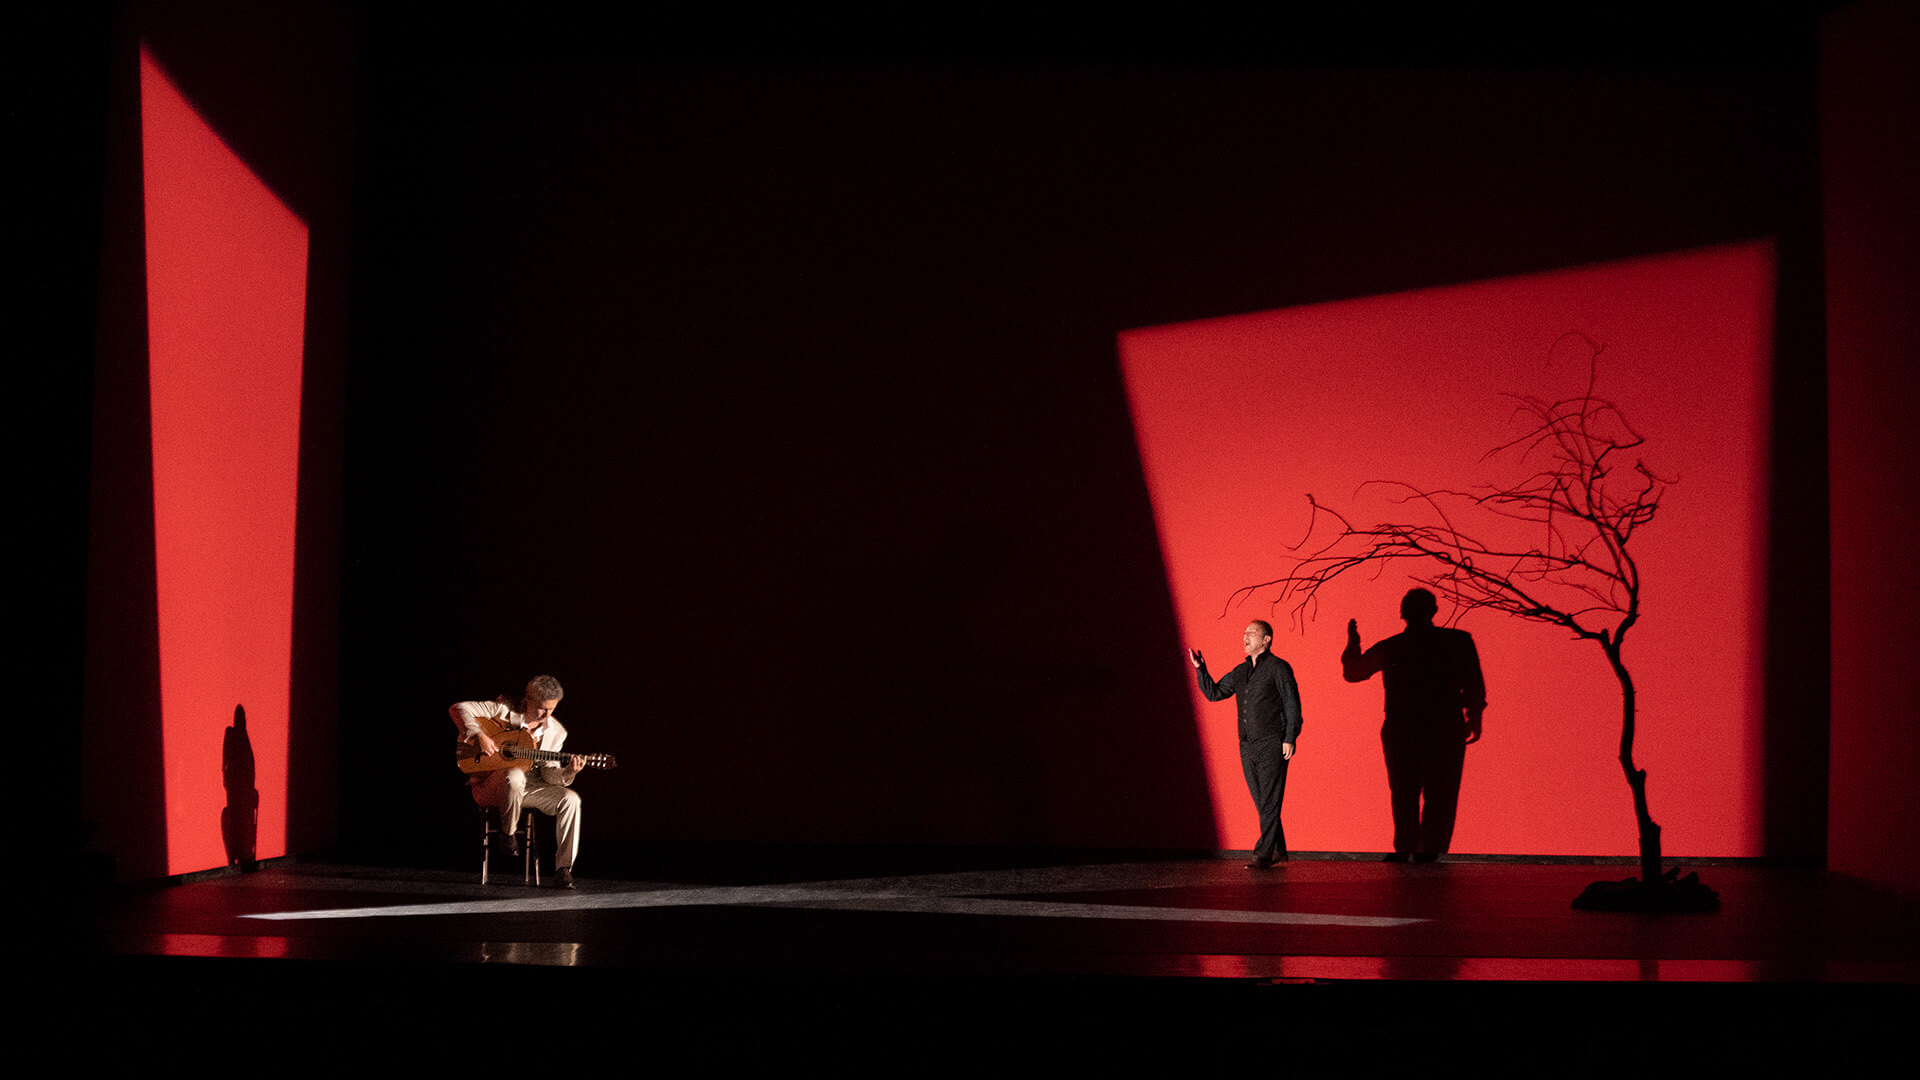 Teatro Aveirense apresenta “Amore”, novo espetáculo do italiano Pippo Delbono